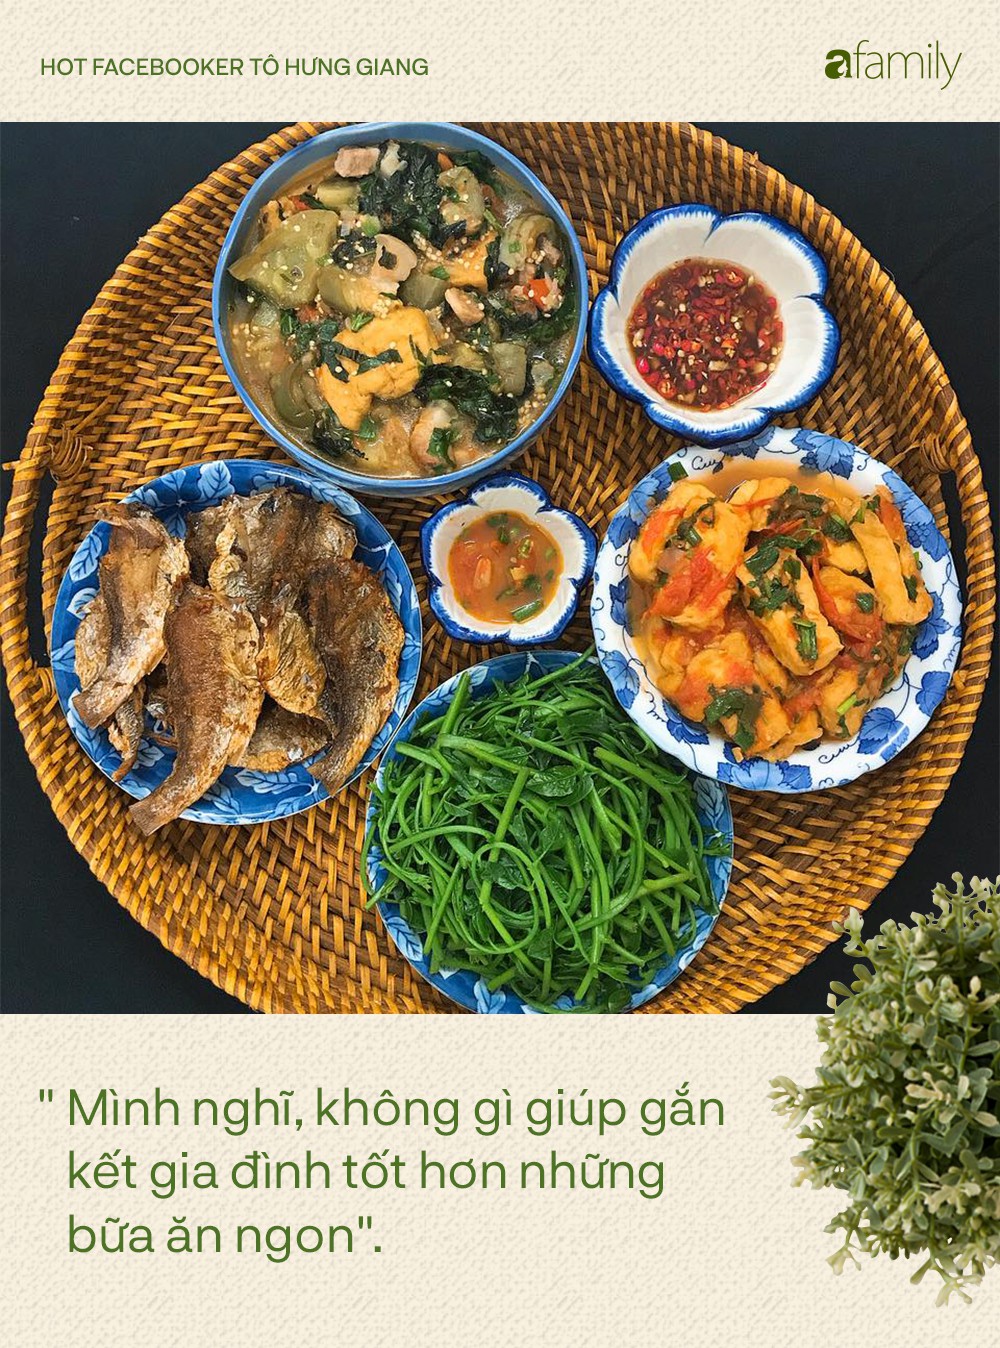 Hot Facebooker Tô Hưng Giang:Không gì giúp gắn kết gia đình tốt hơn những bữa ăn ngon - Ảnh 1.